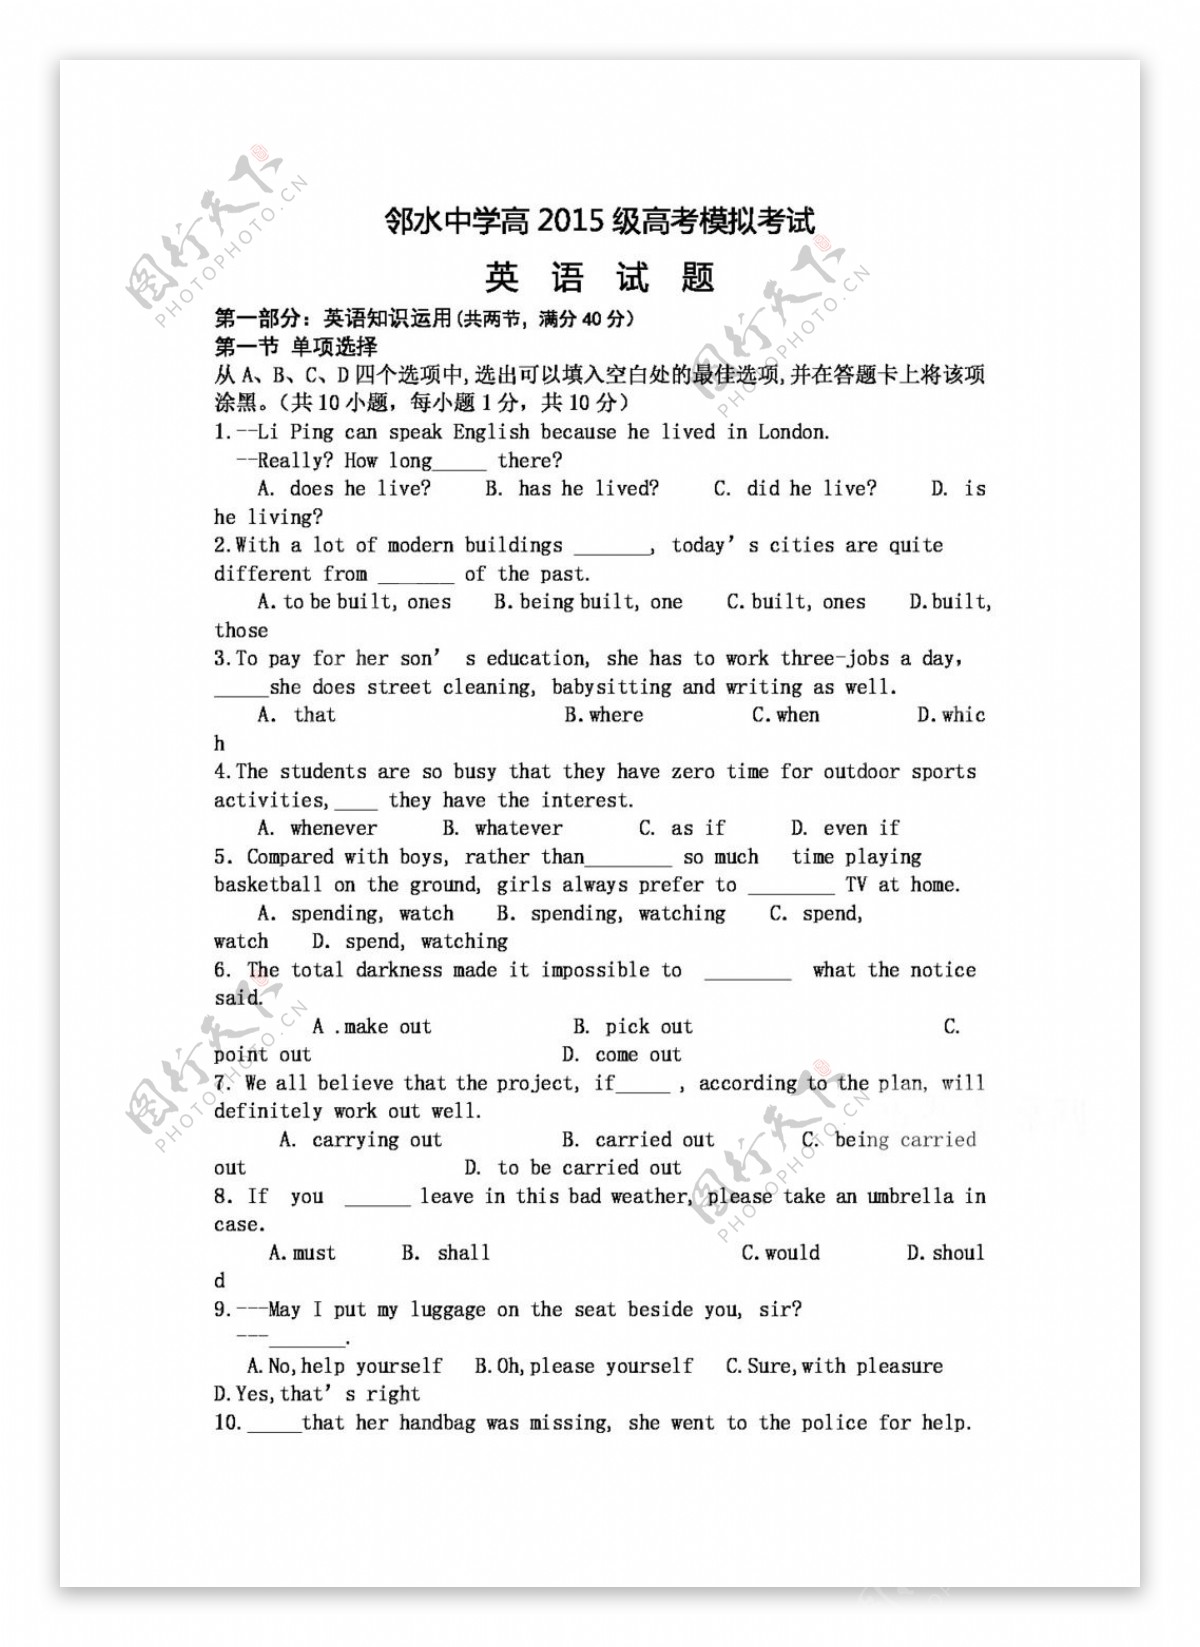 高考专区英语四川省高考模拟考试英语试题